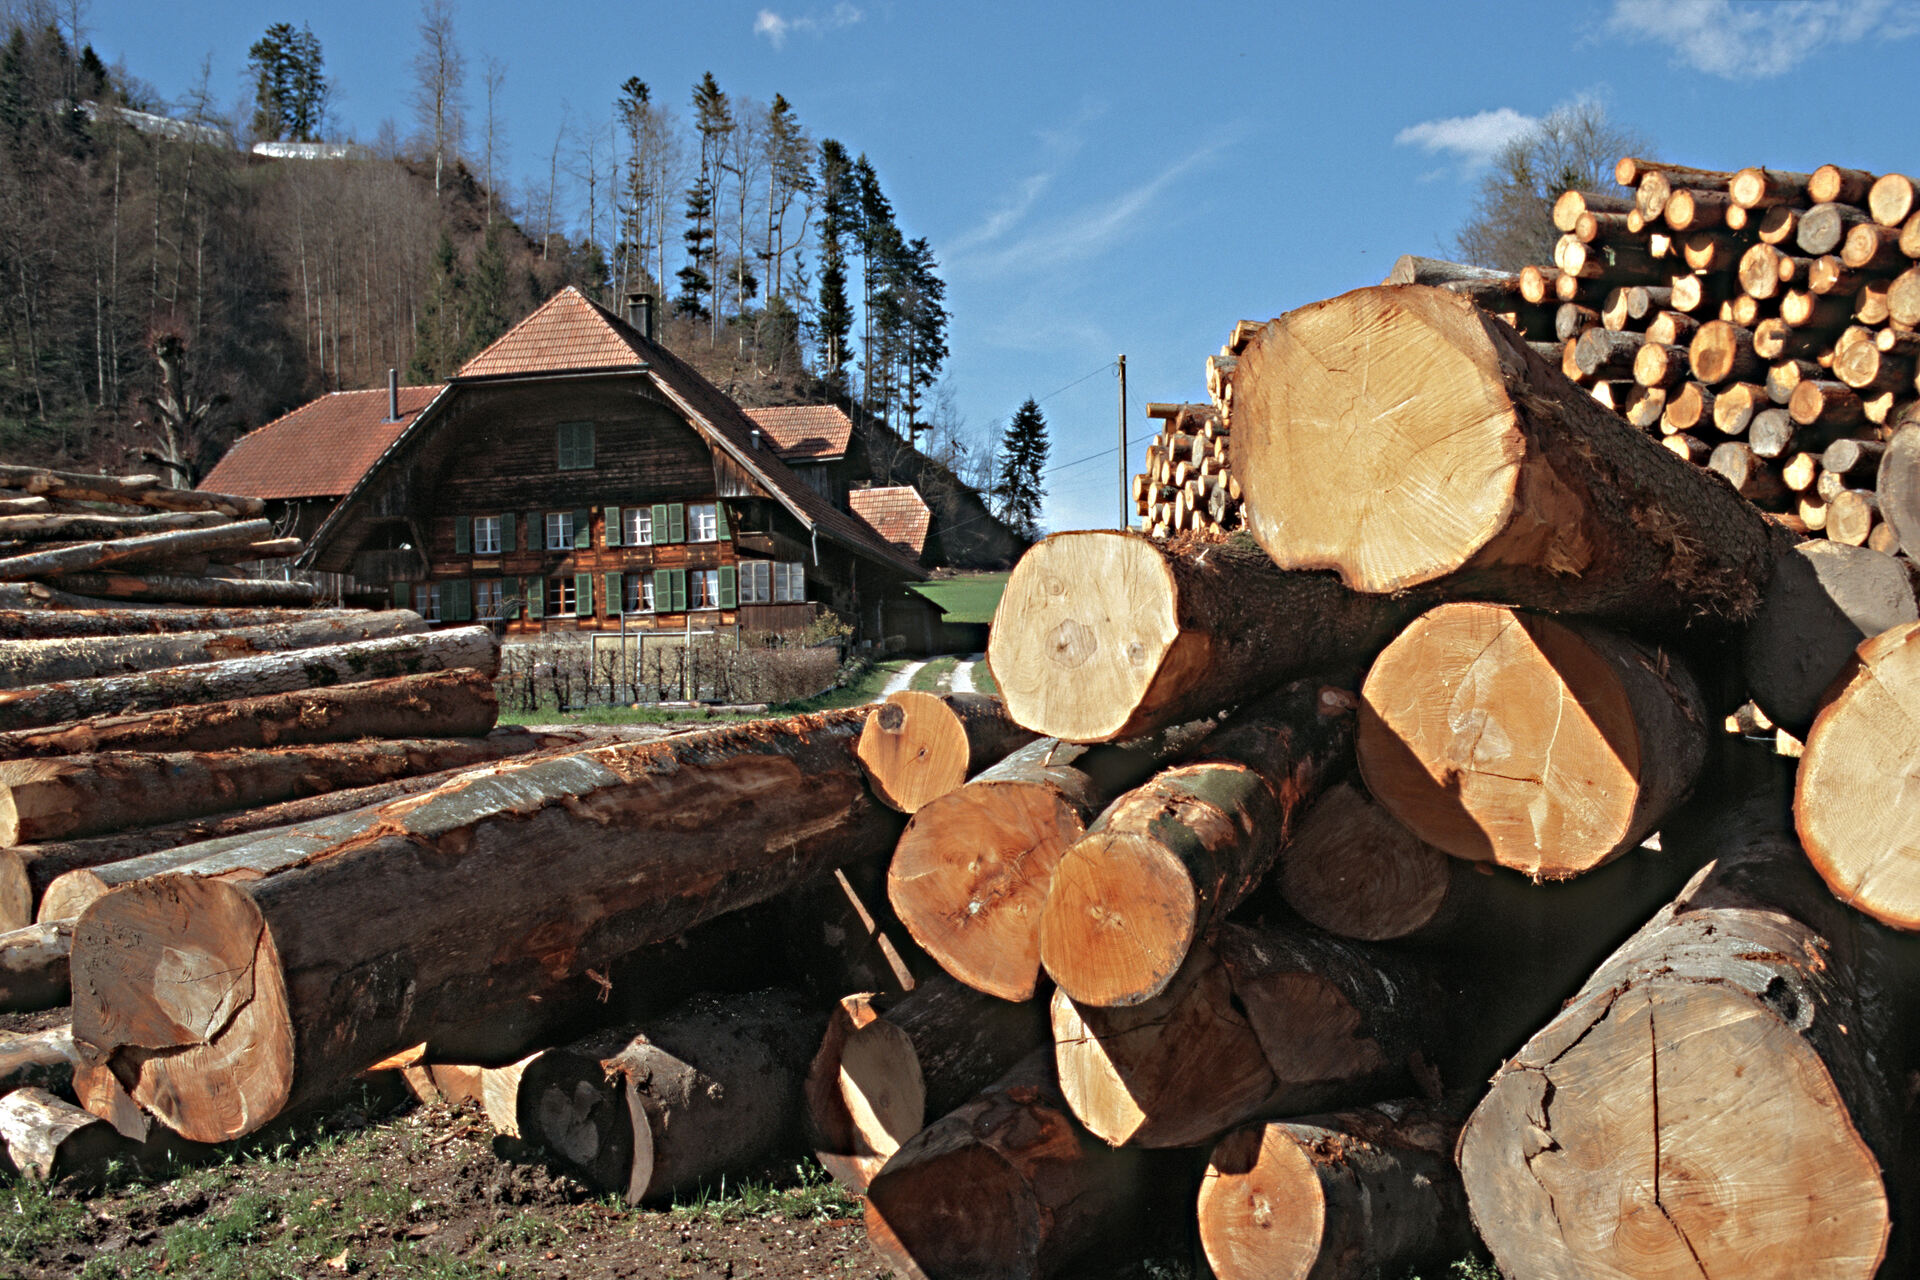 Legno: in una logica di utilizzo a cascata, il legno viene prima impiegato per case, mobili, pannelli di truciolato o materiali isolanti prima di essere successivamente sfruttato come legno da energia